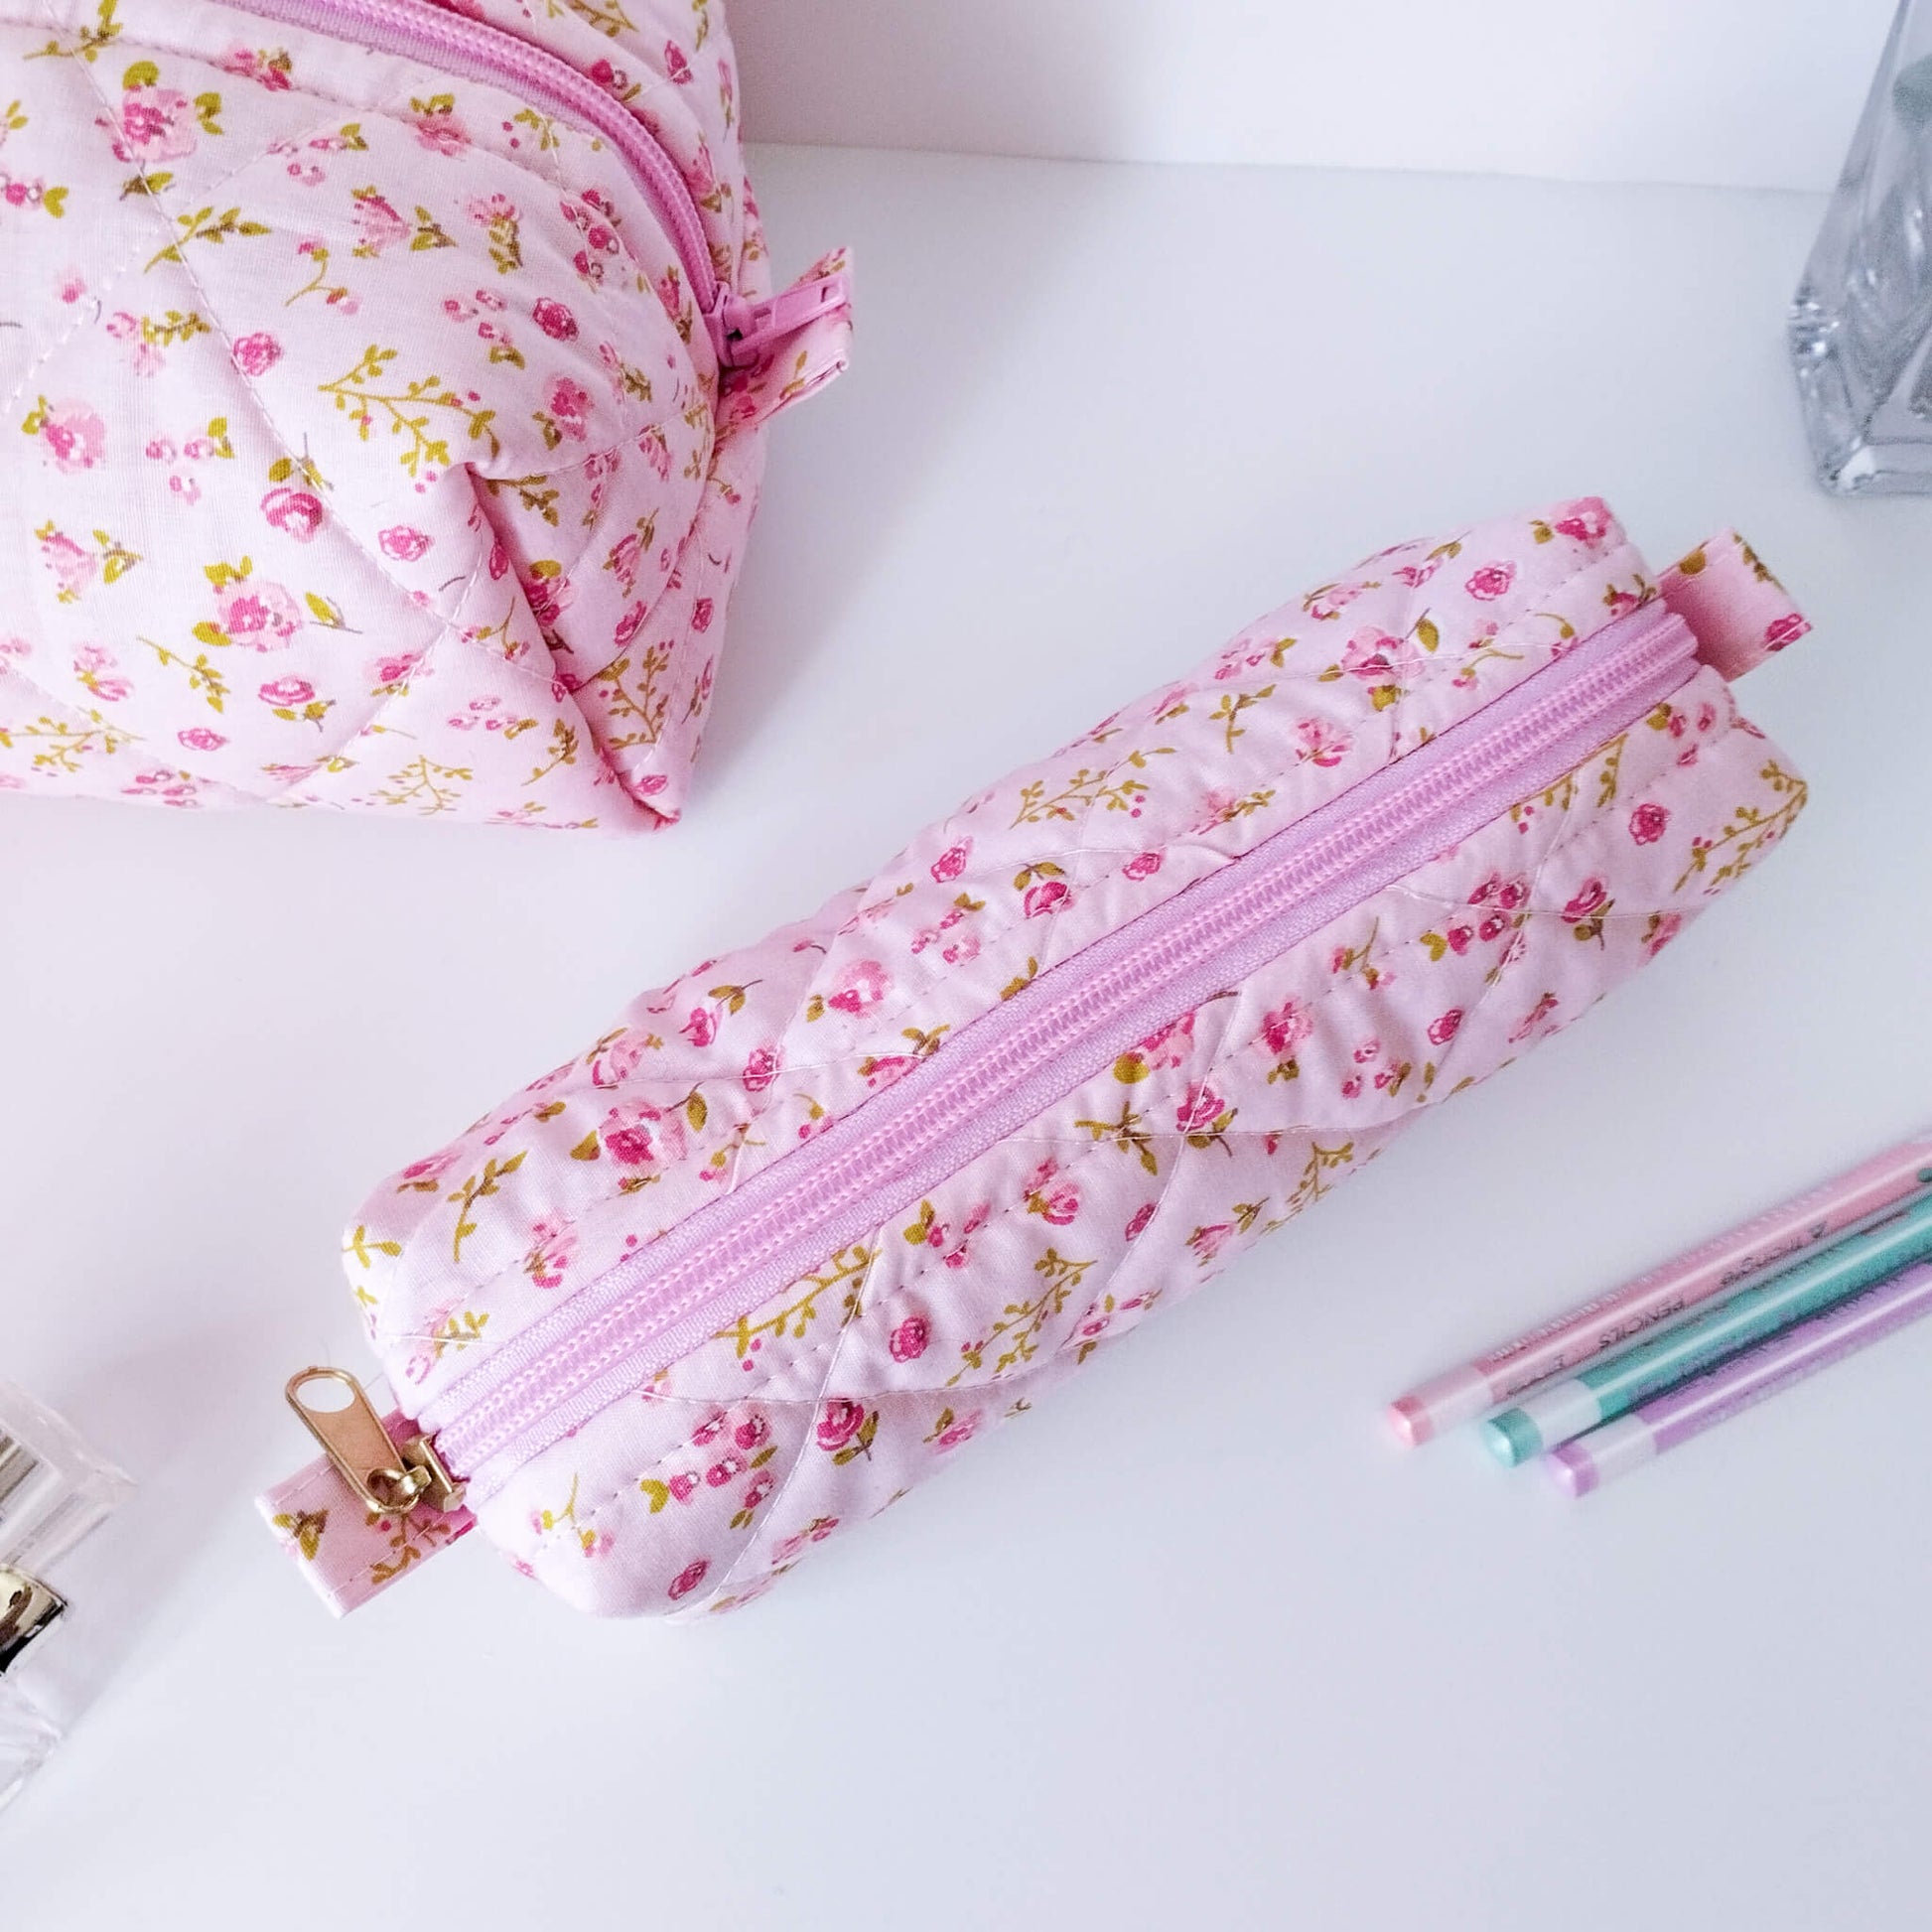 Pink Floral Brush Bag